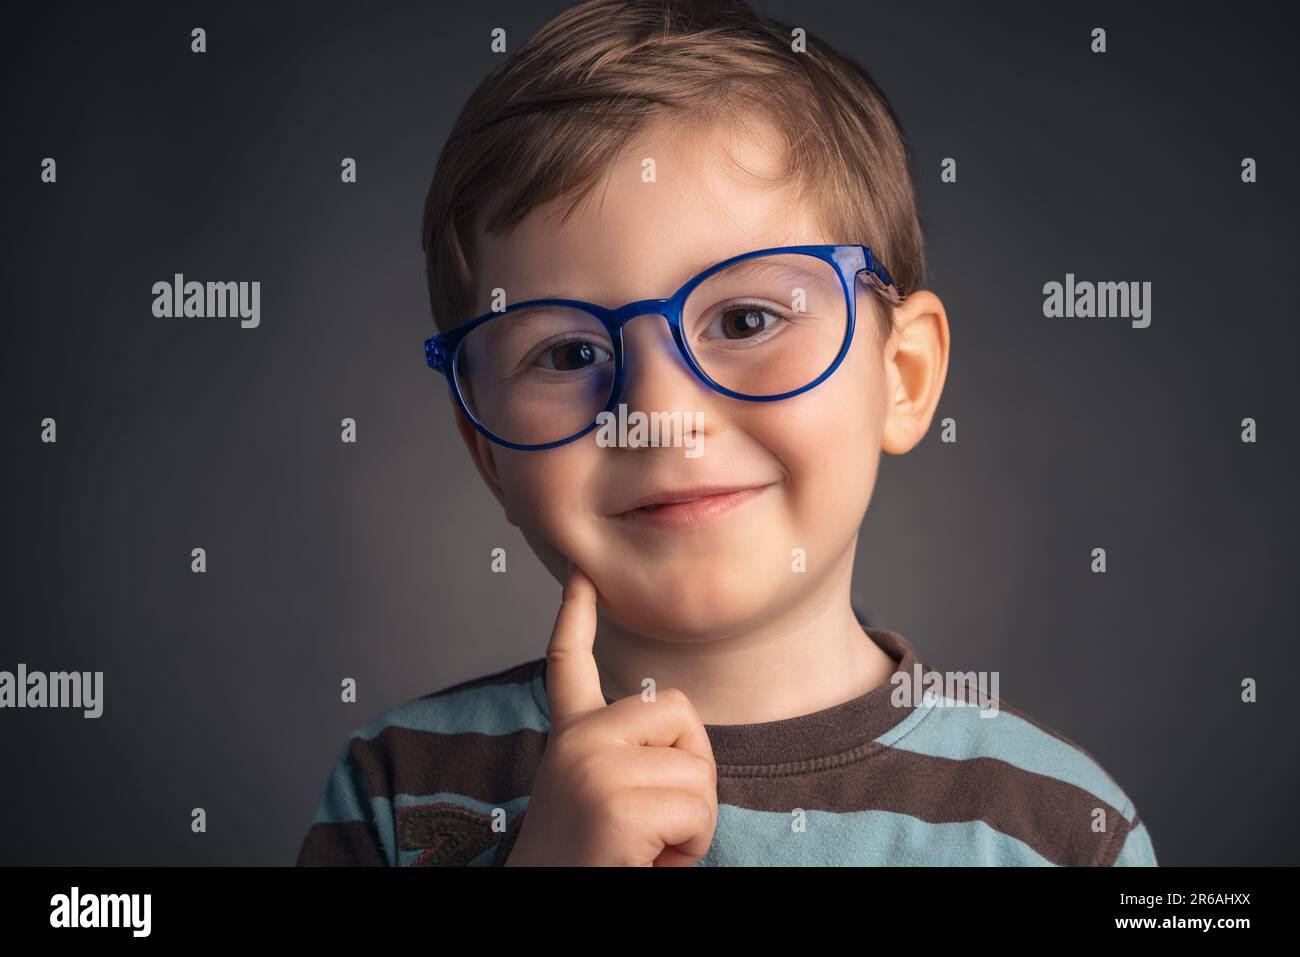 Süß, lächeln, lustig und clever, kleiner Junge mit Brille, Studioporträt auf schwarzem Hintergrund. Kluger Vorschulkinder. Stockfoto